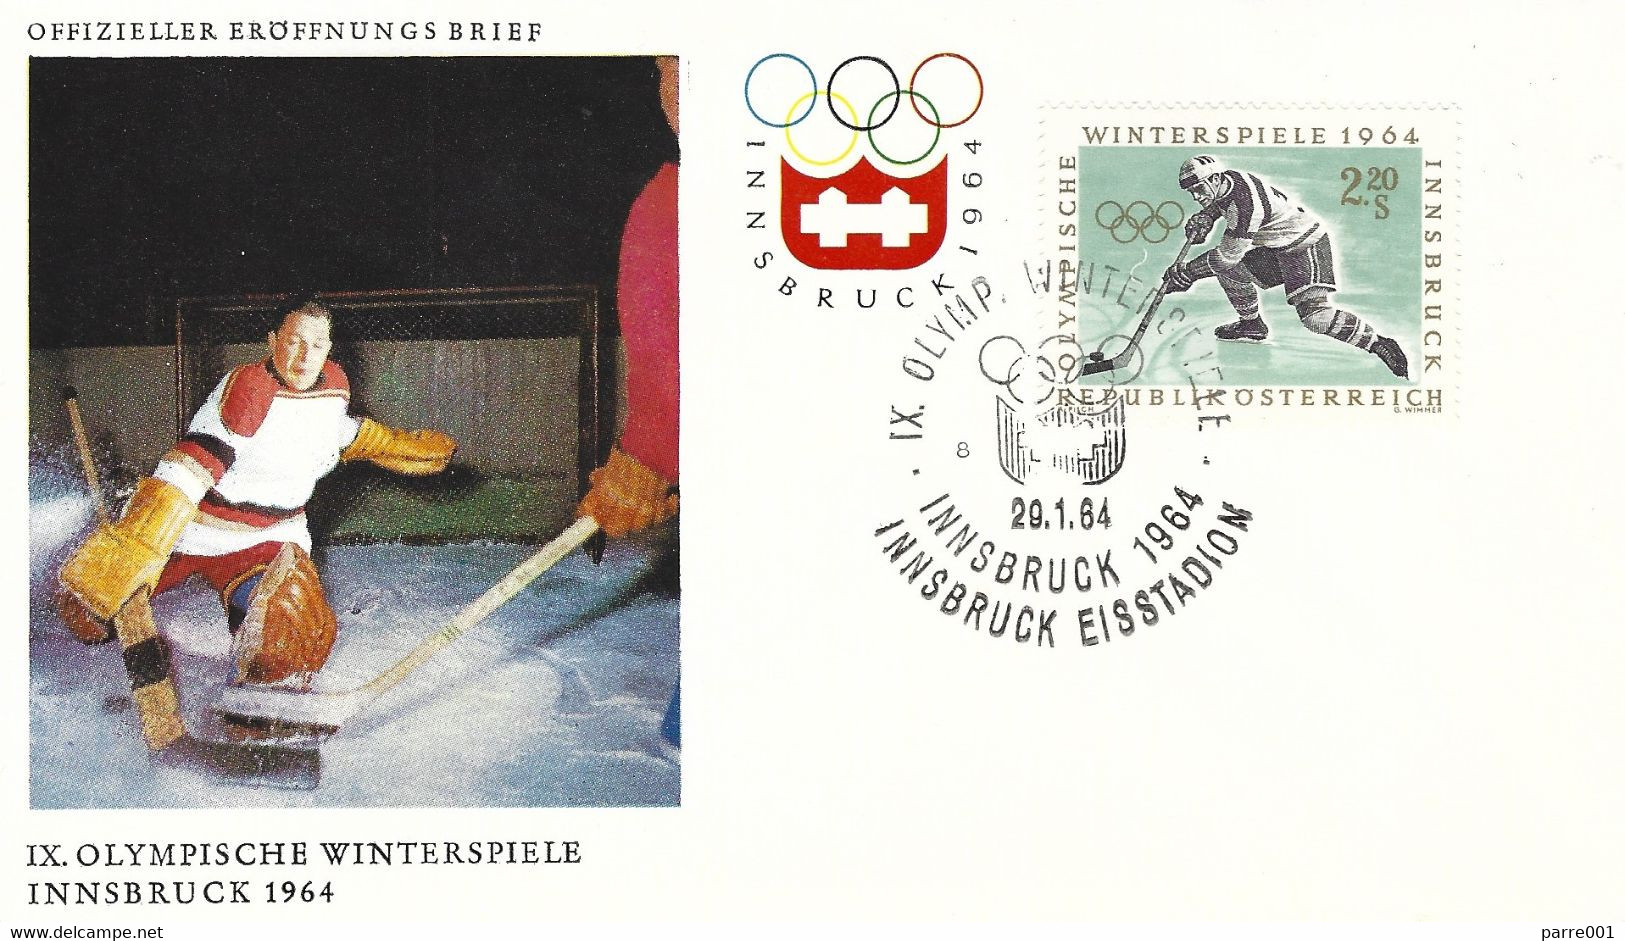 Osterreich Austria 1964 Innsbruck Olympic Games Ice Hockey FDC Cover - Eishockey